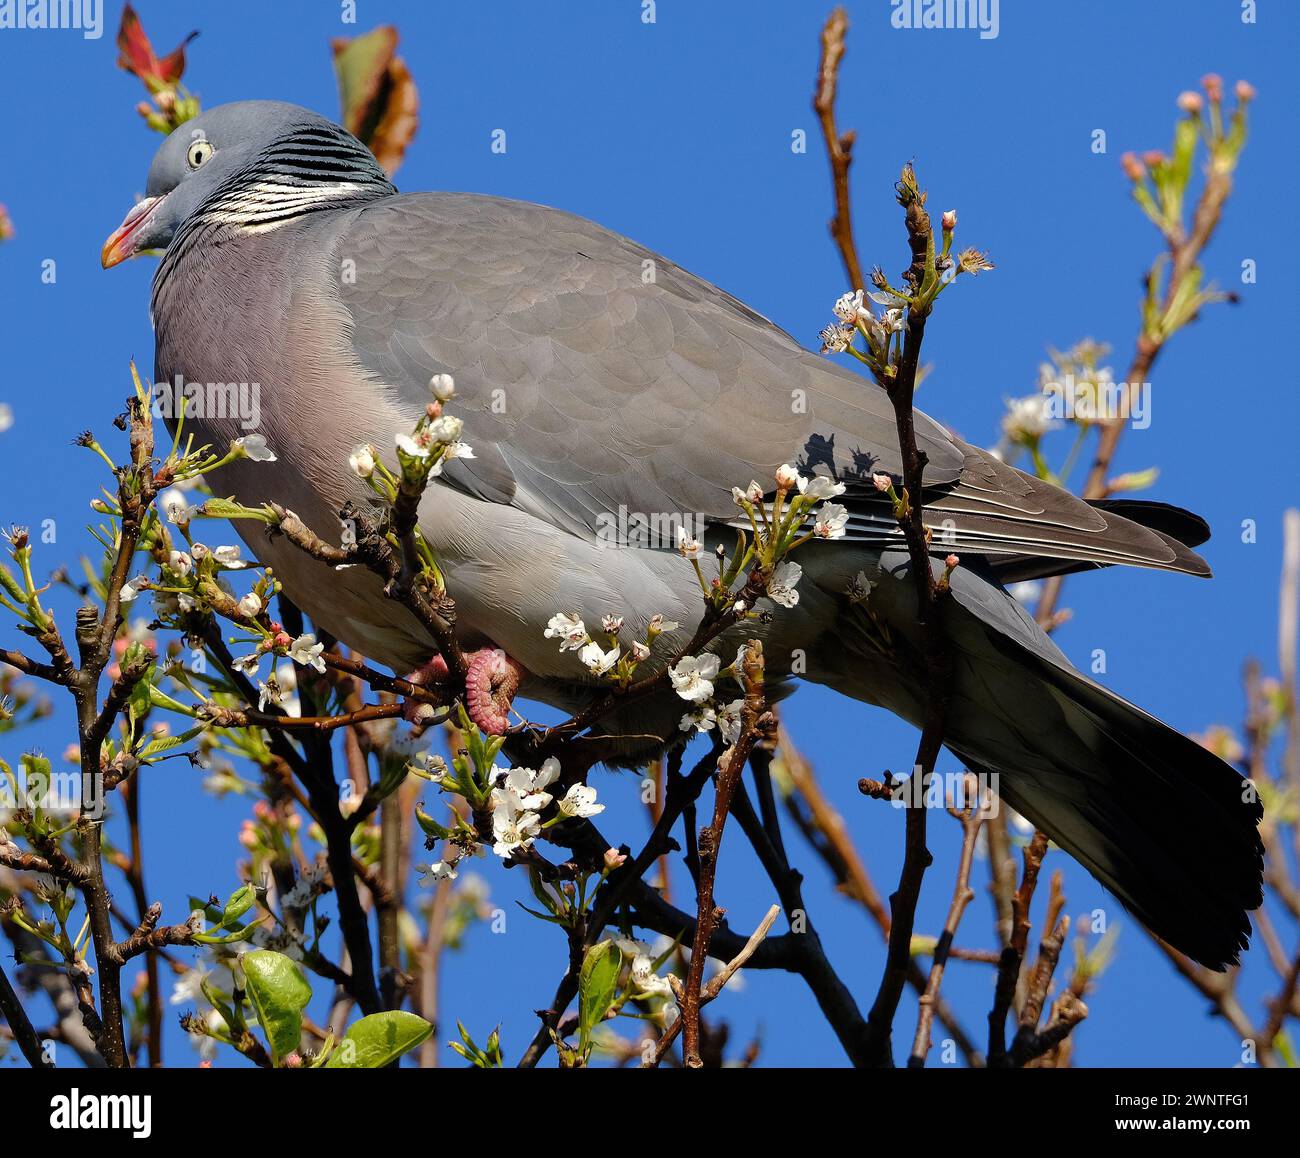 Le pigeon des bois commun, également connu sous le nom de simplement pigeon des bois, est une grande espèce de la famille des colombes et des pigeons, originaire du Paléarctique occidental. Banque D'Images